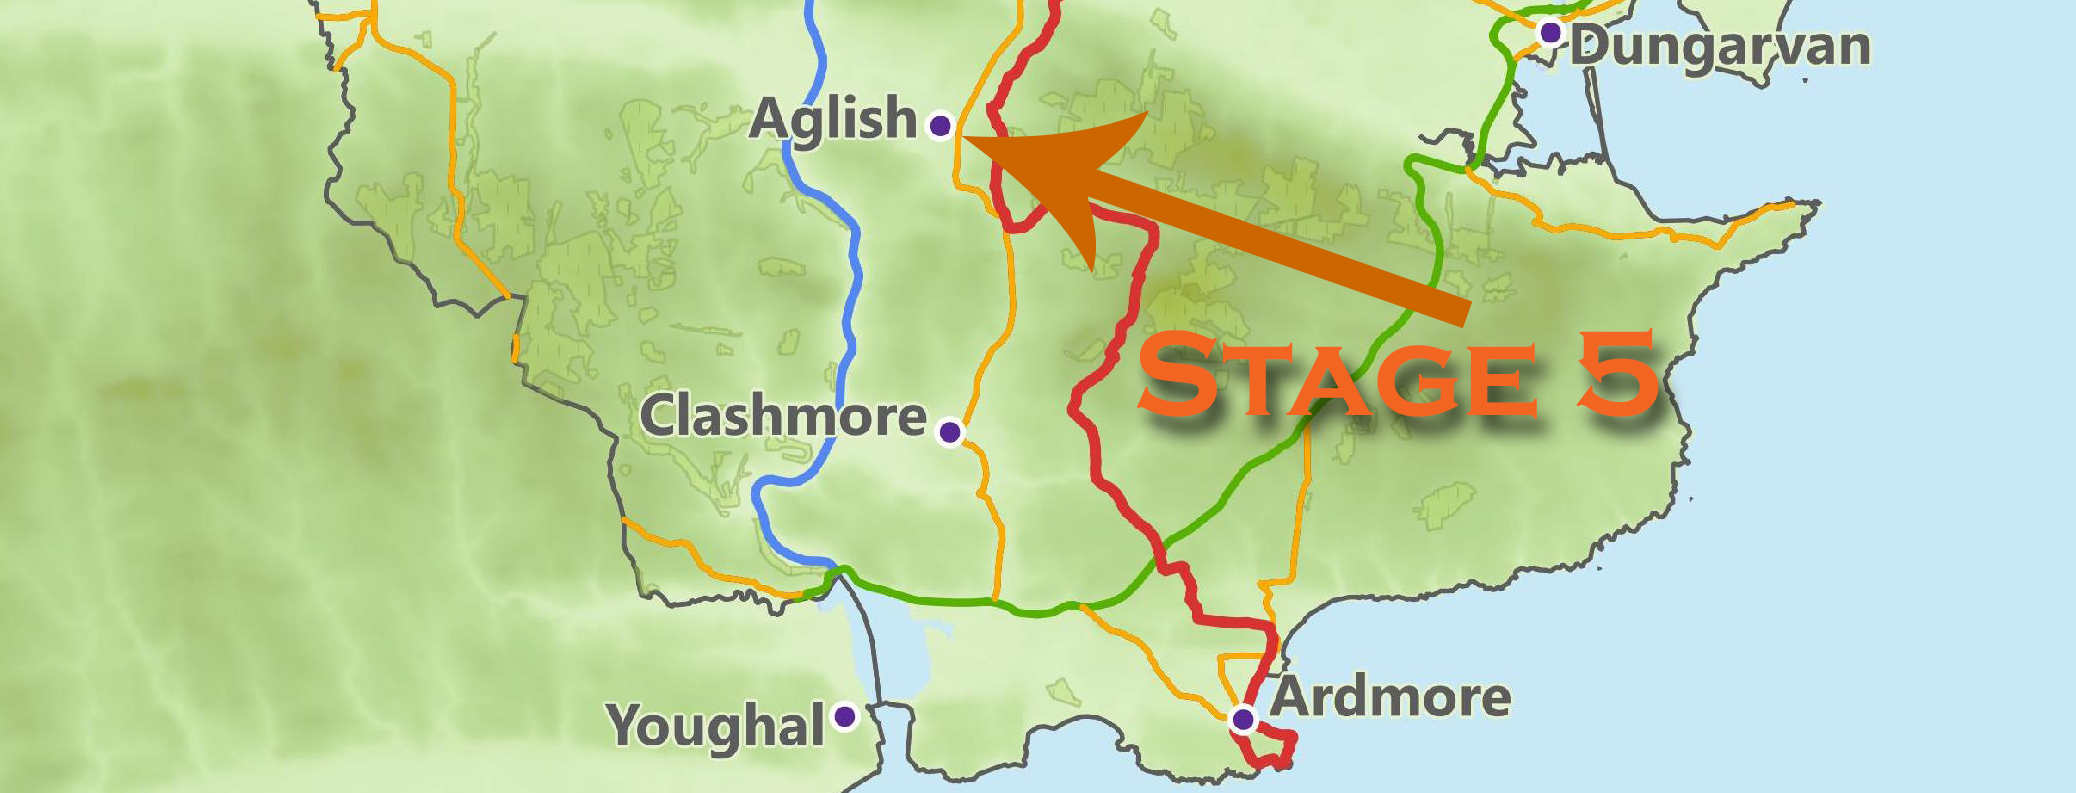 St. Declan's Way - Stage 5